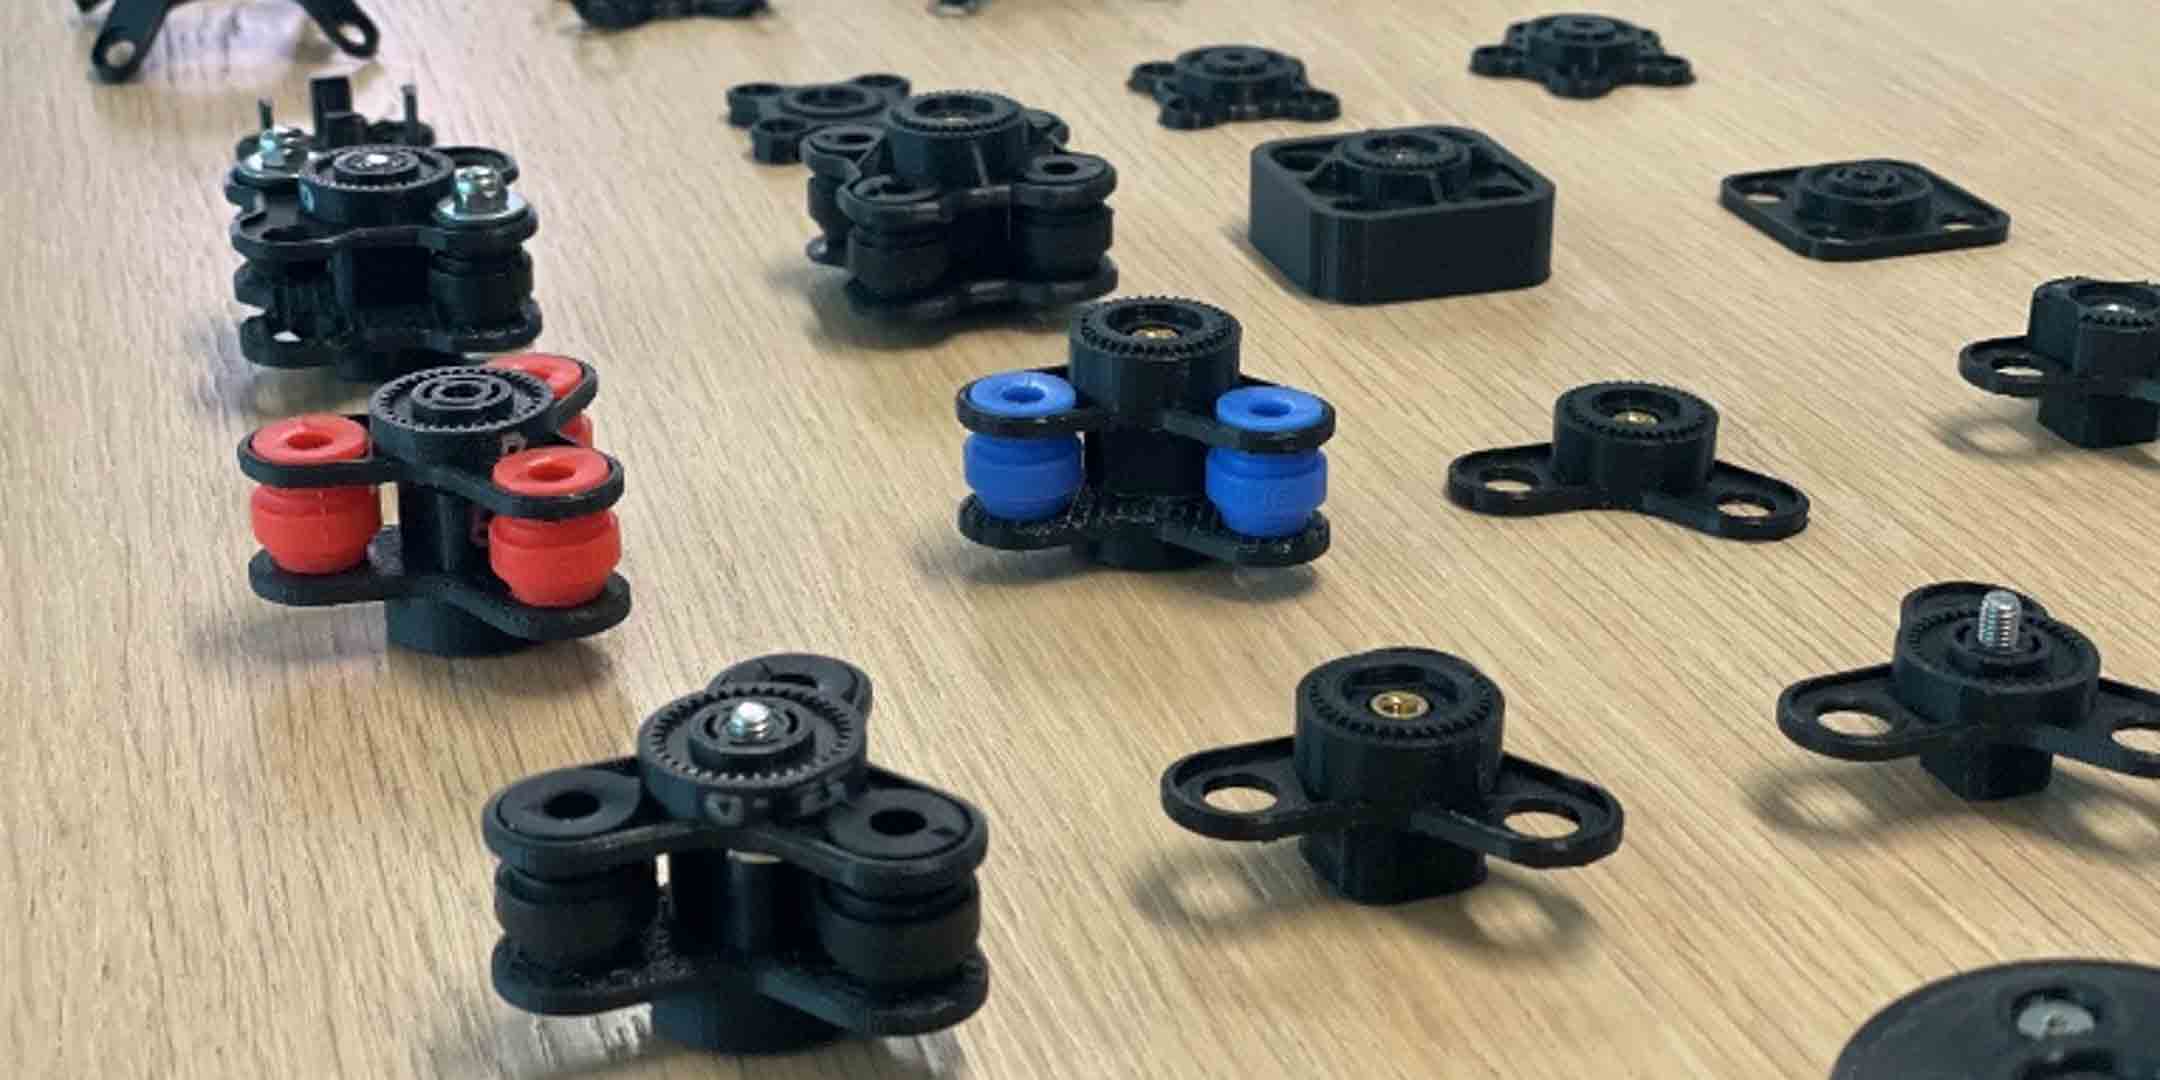 3D printed iterations of Quad Lock designs